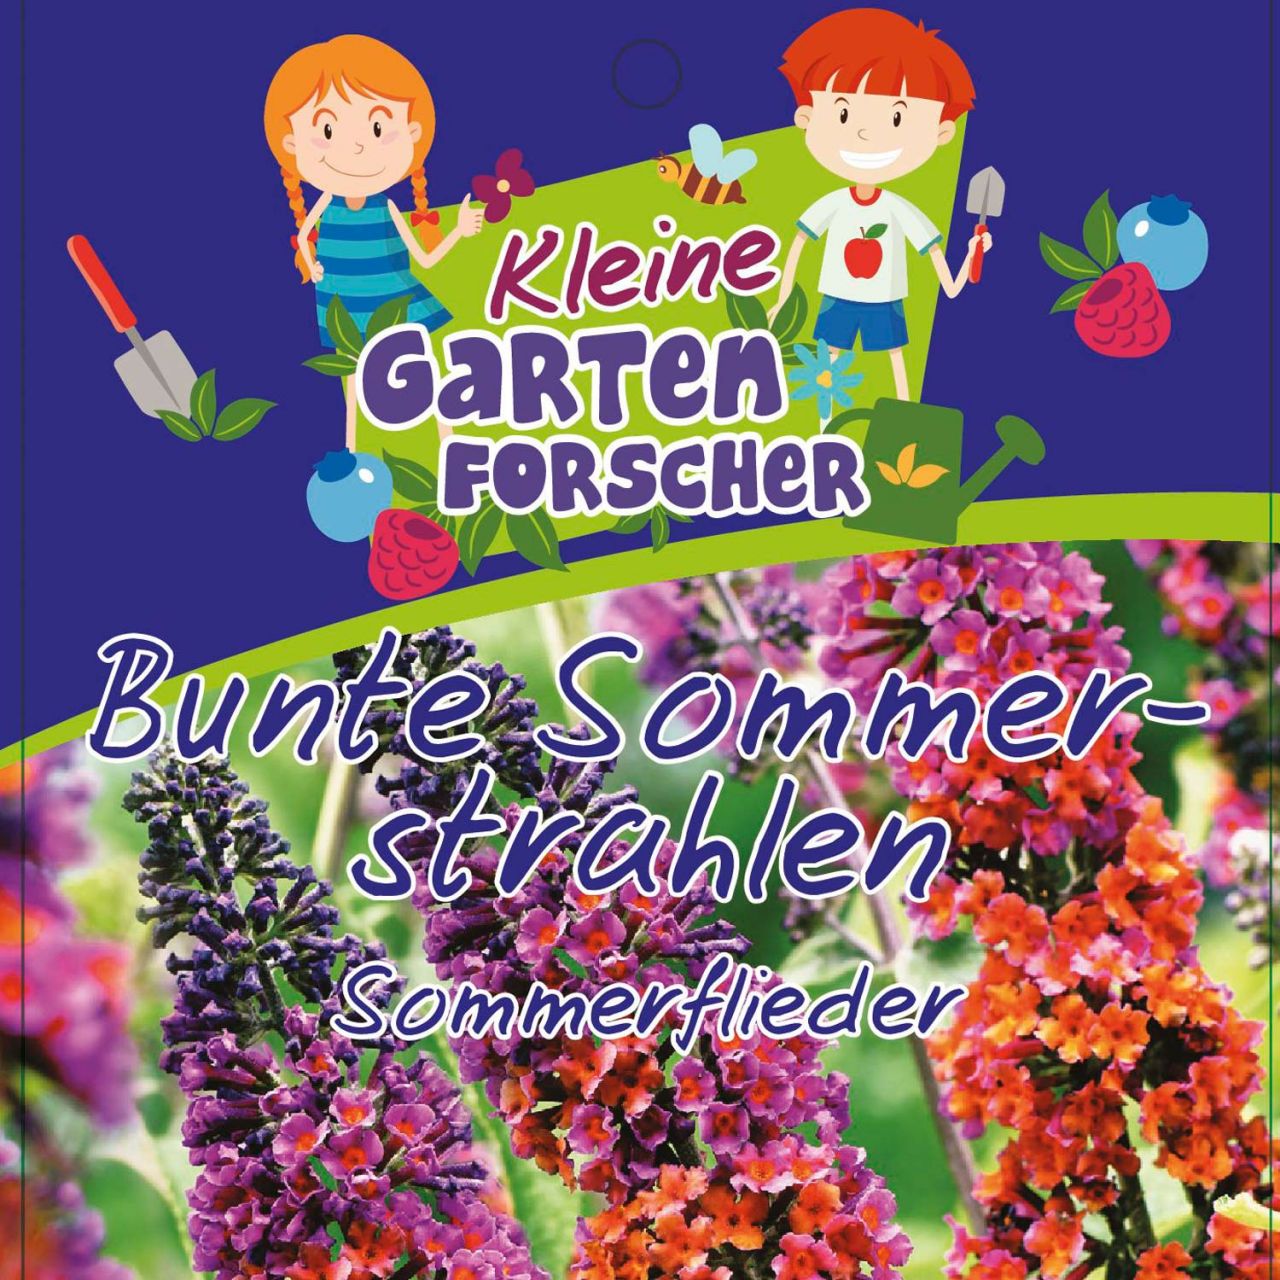 Kategorie <b>Blütensträucher und Ziergehölze </b> - Sommerflieder 'Bunte Sommerstrahlen' Kleine Gartenforscher - Buddleja